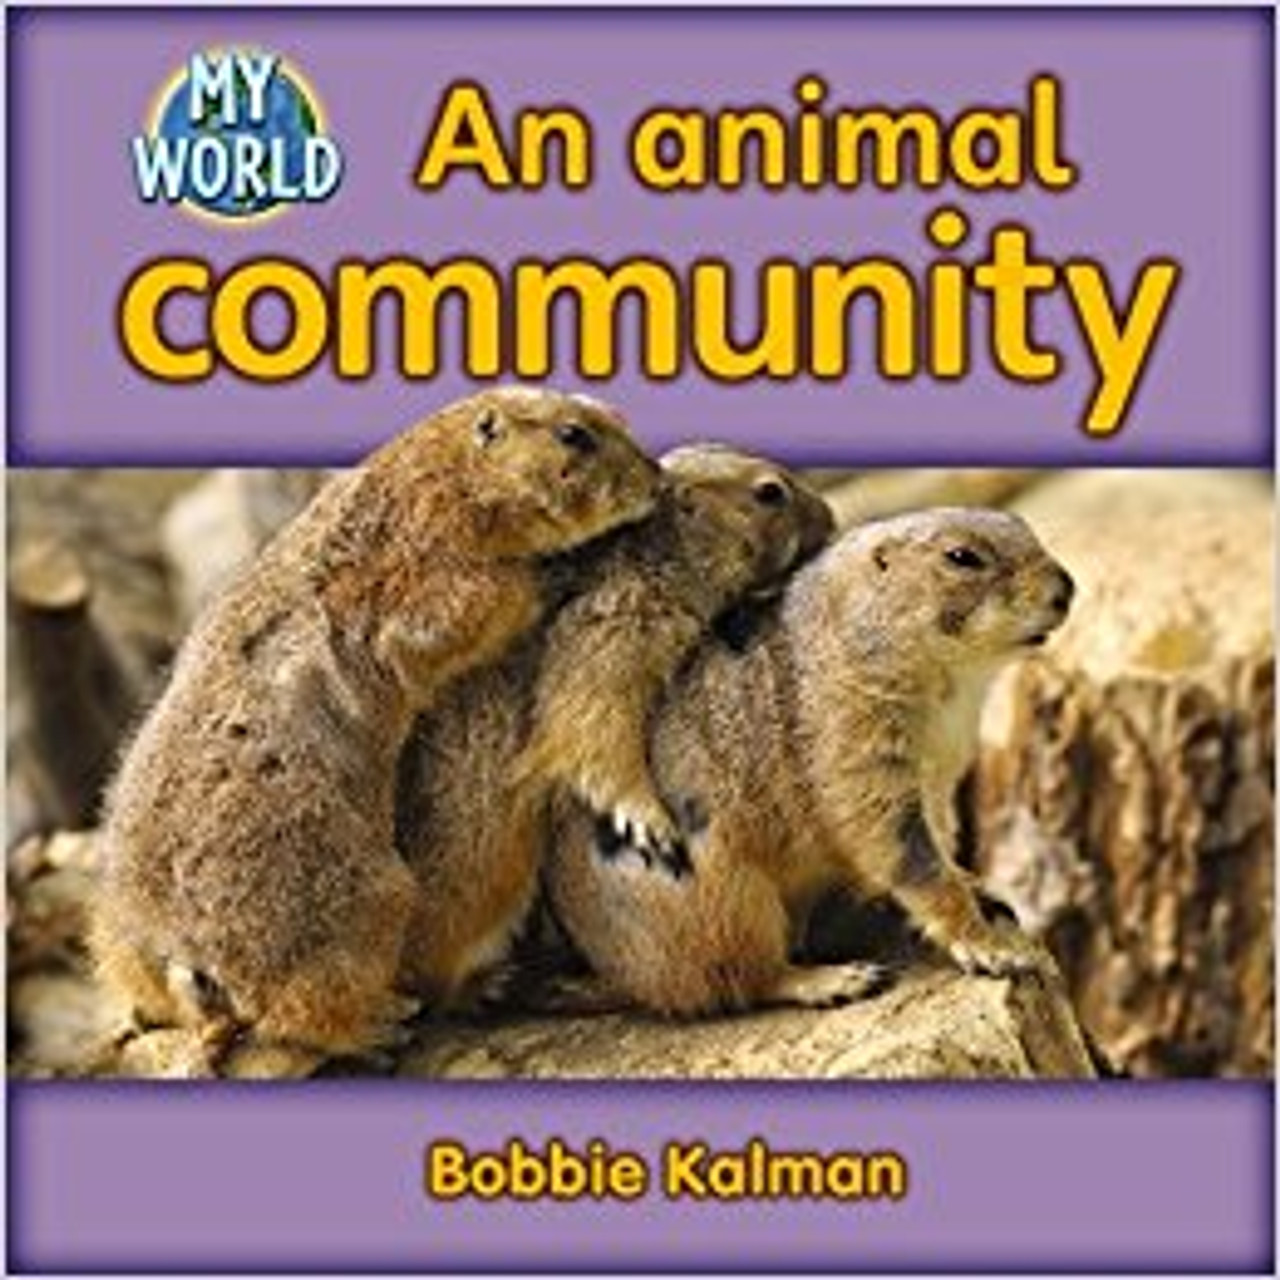 An animal community (Paperback) by Bobbie Kalman